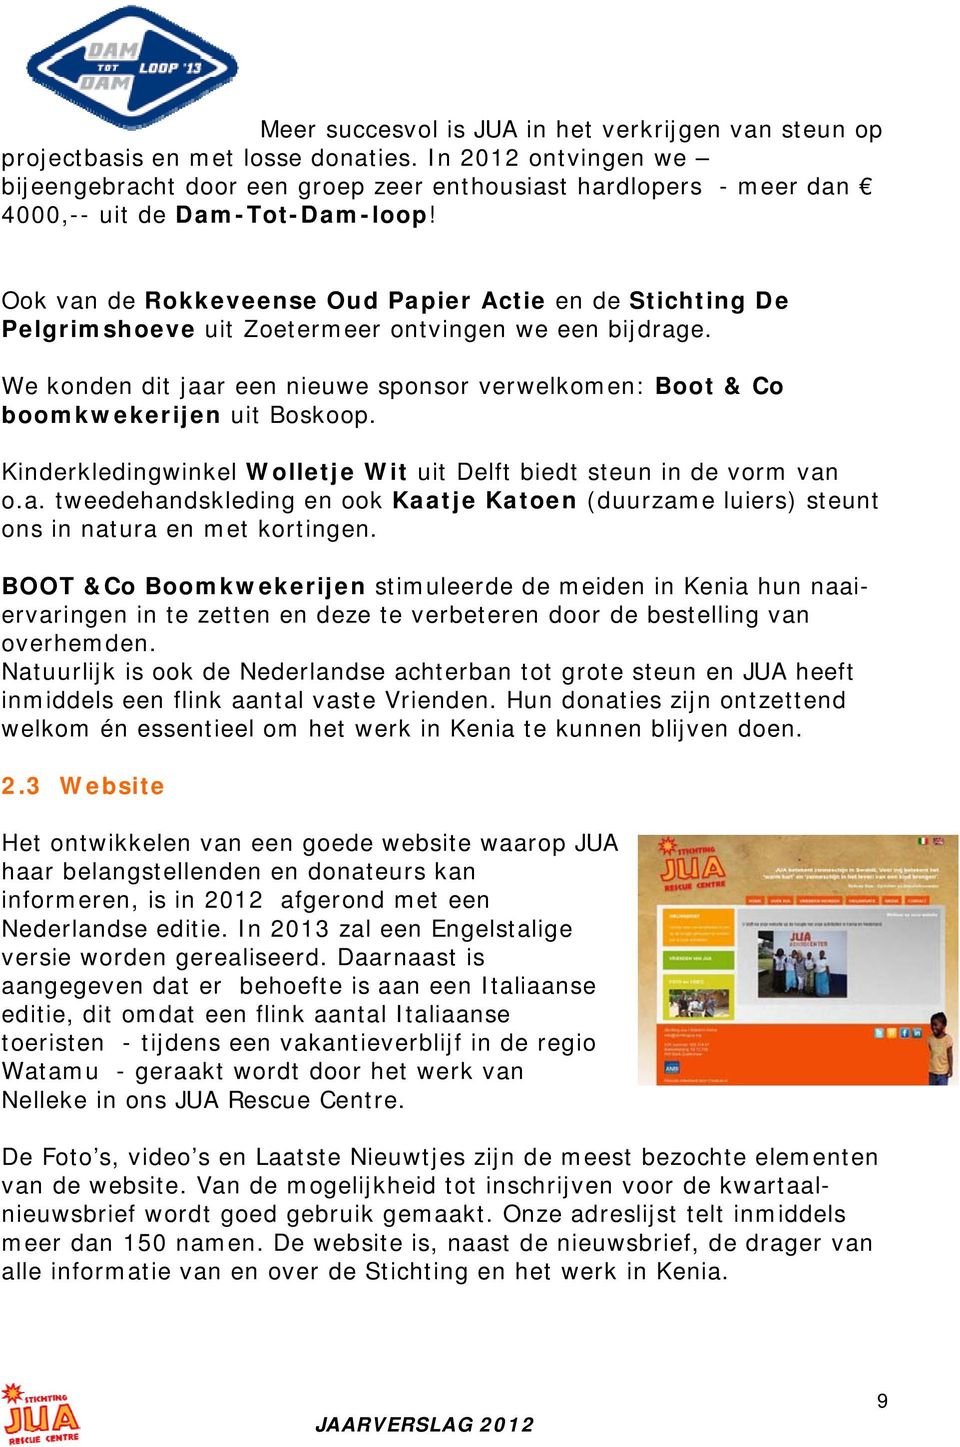 Ook van de Rokkeveense Oud Papier Actie en de Stichting De Pelgrimshoeve uit Zoetermeer ontvingen we een bijdrage.